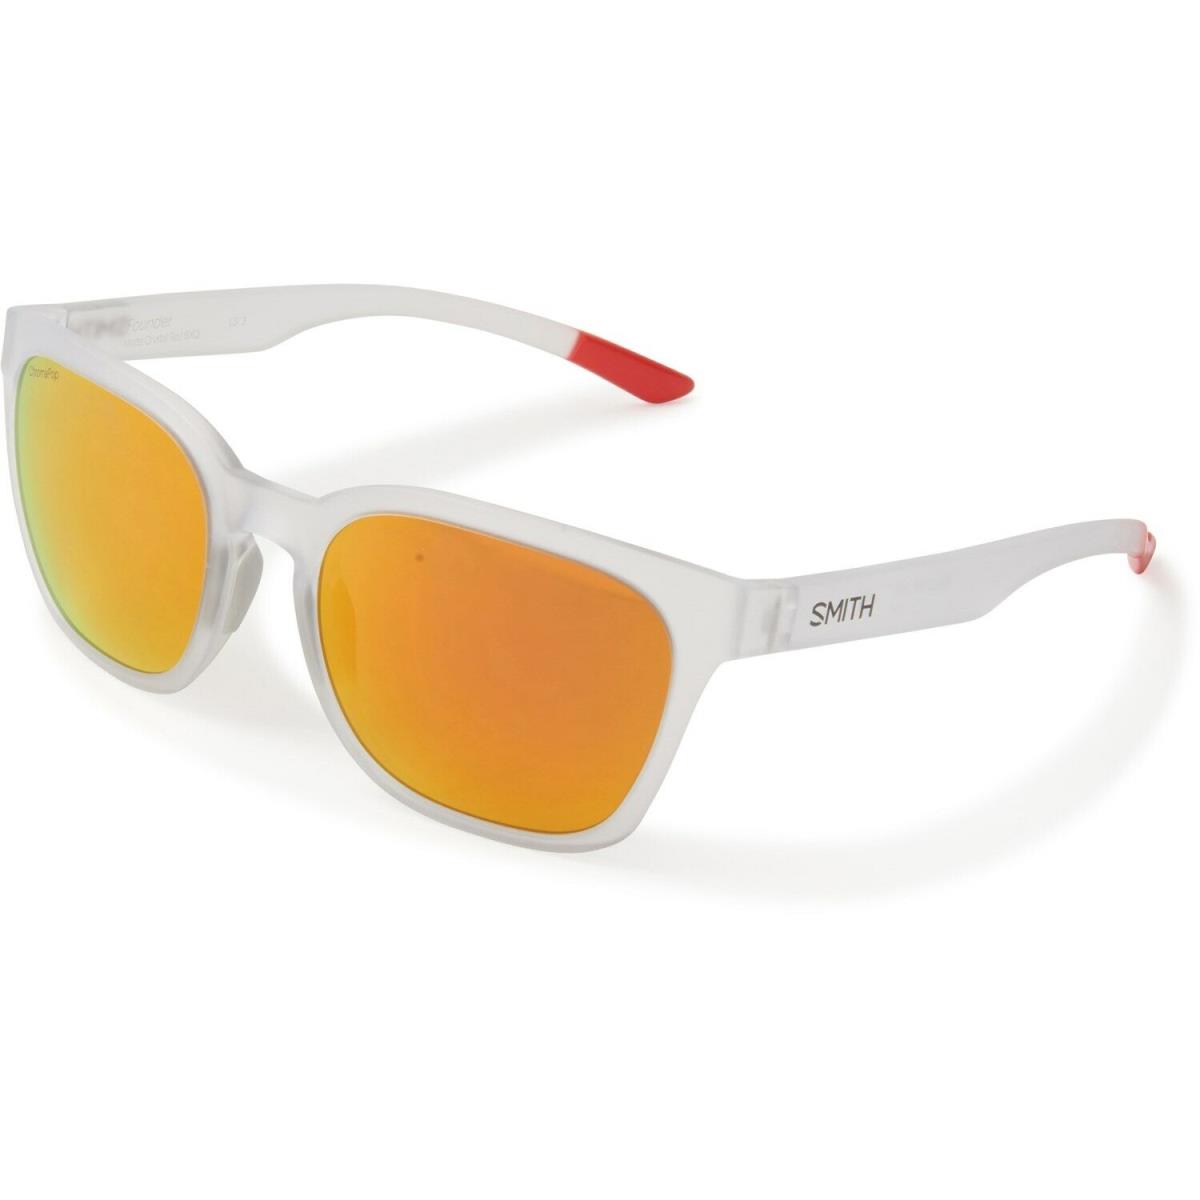 Smith Optics Founder Sunglasses - Chromapop Lenses 6XQ/MattaCrystalRed/SunRedMirror